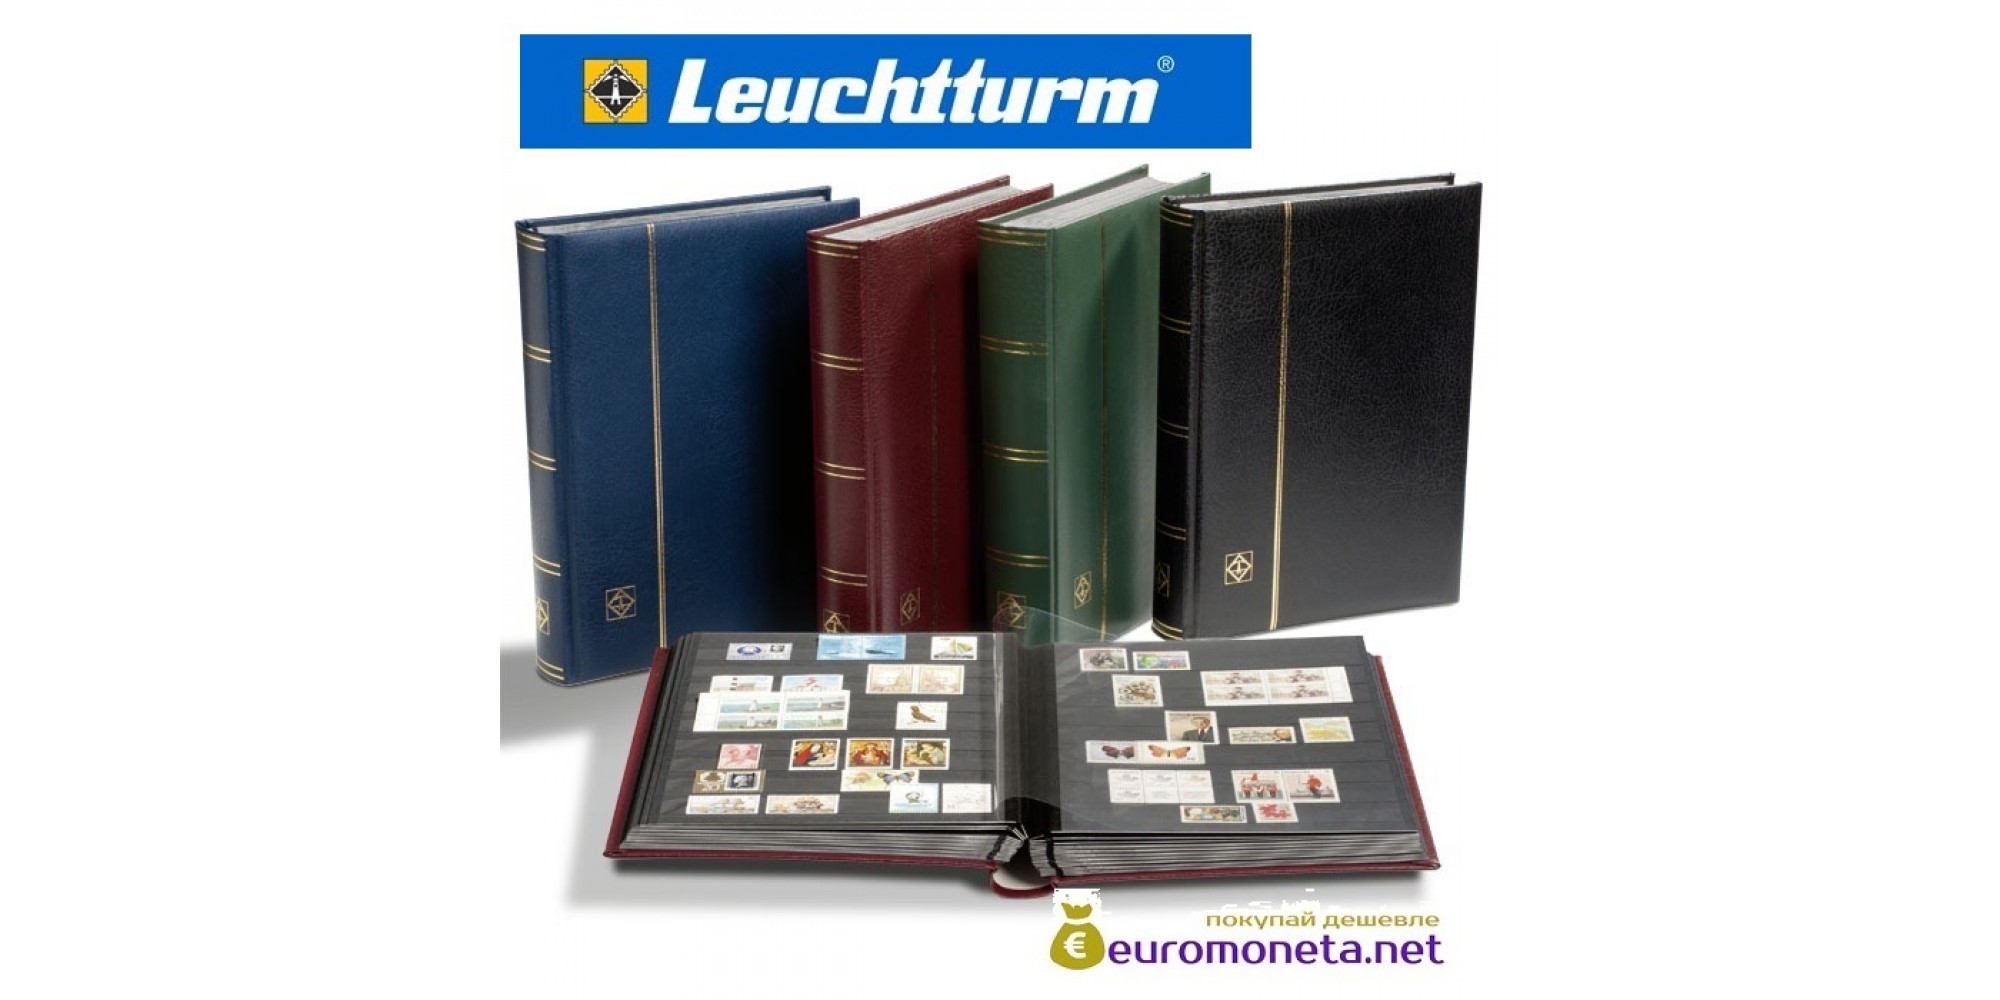 Leuchtturm альбом PREMIUM DIN A4 S64 чёрные страницы, кожаная обложка, чёрный, Германия